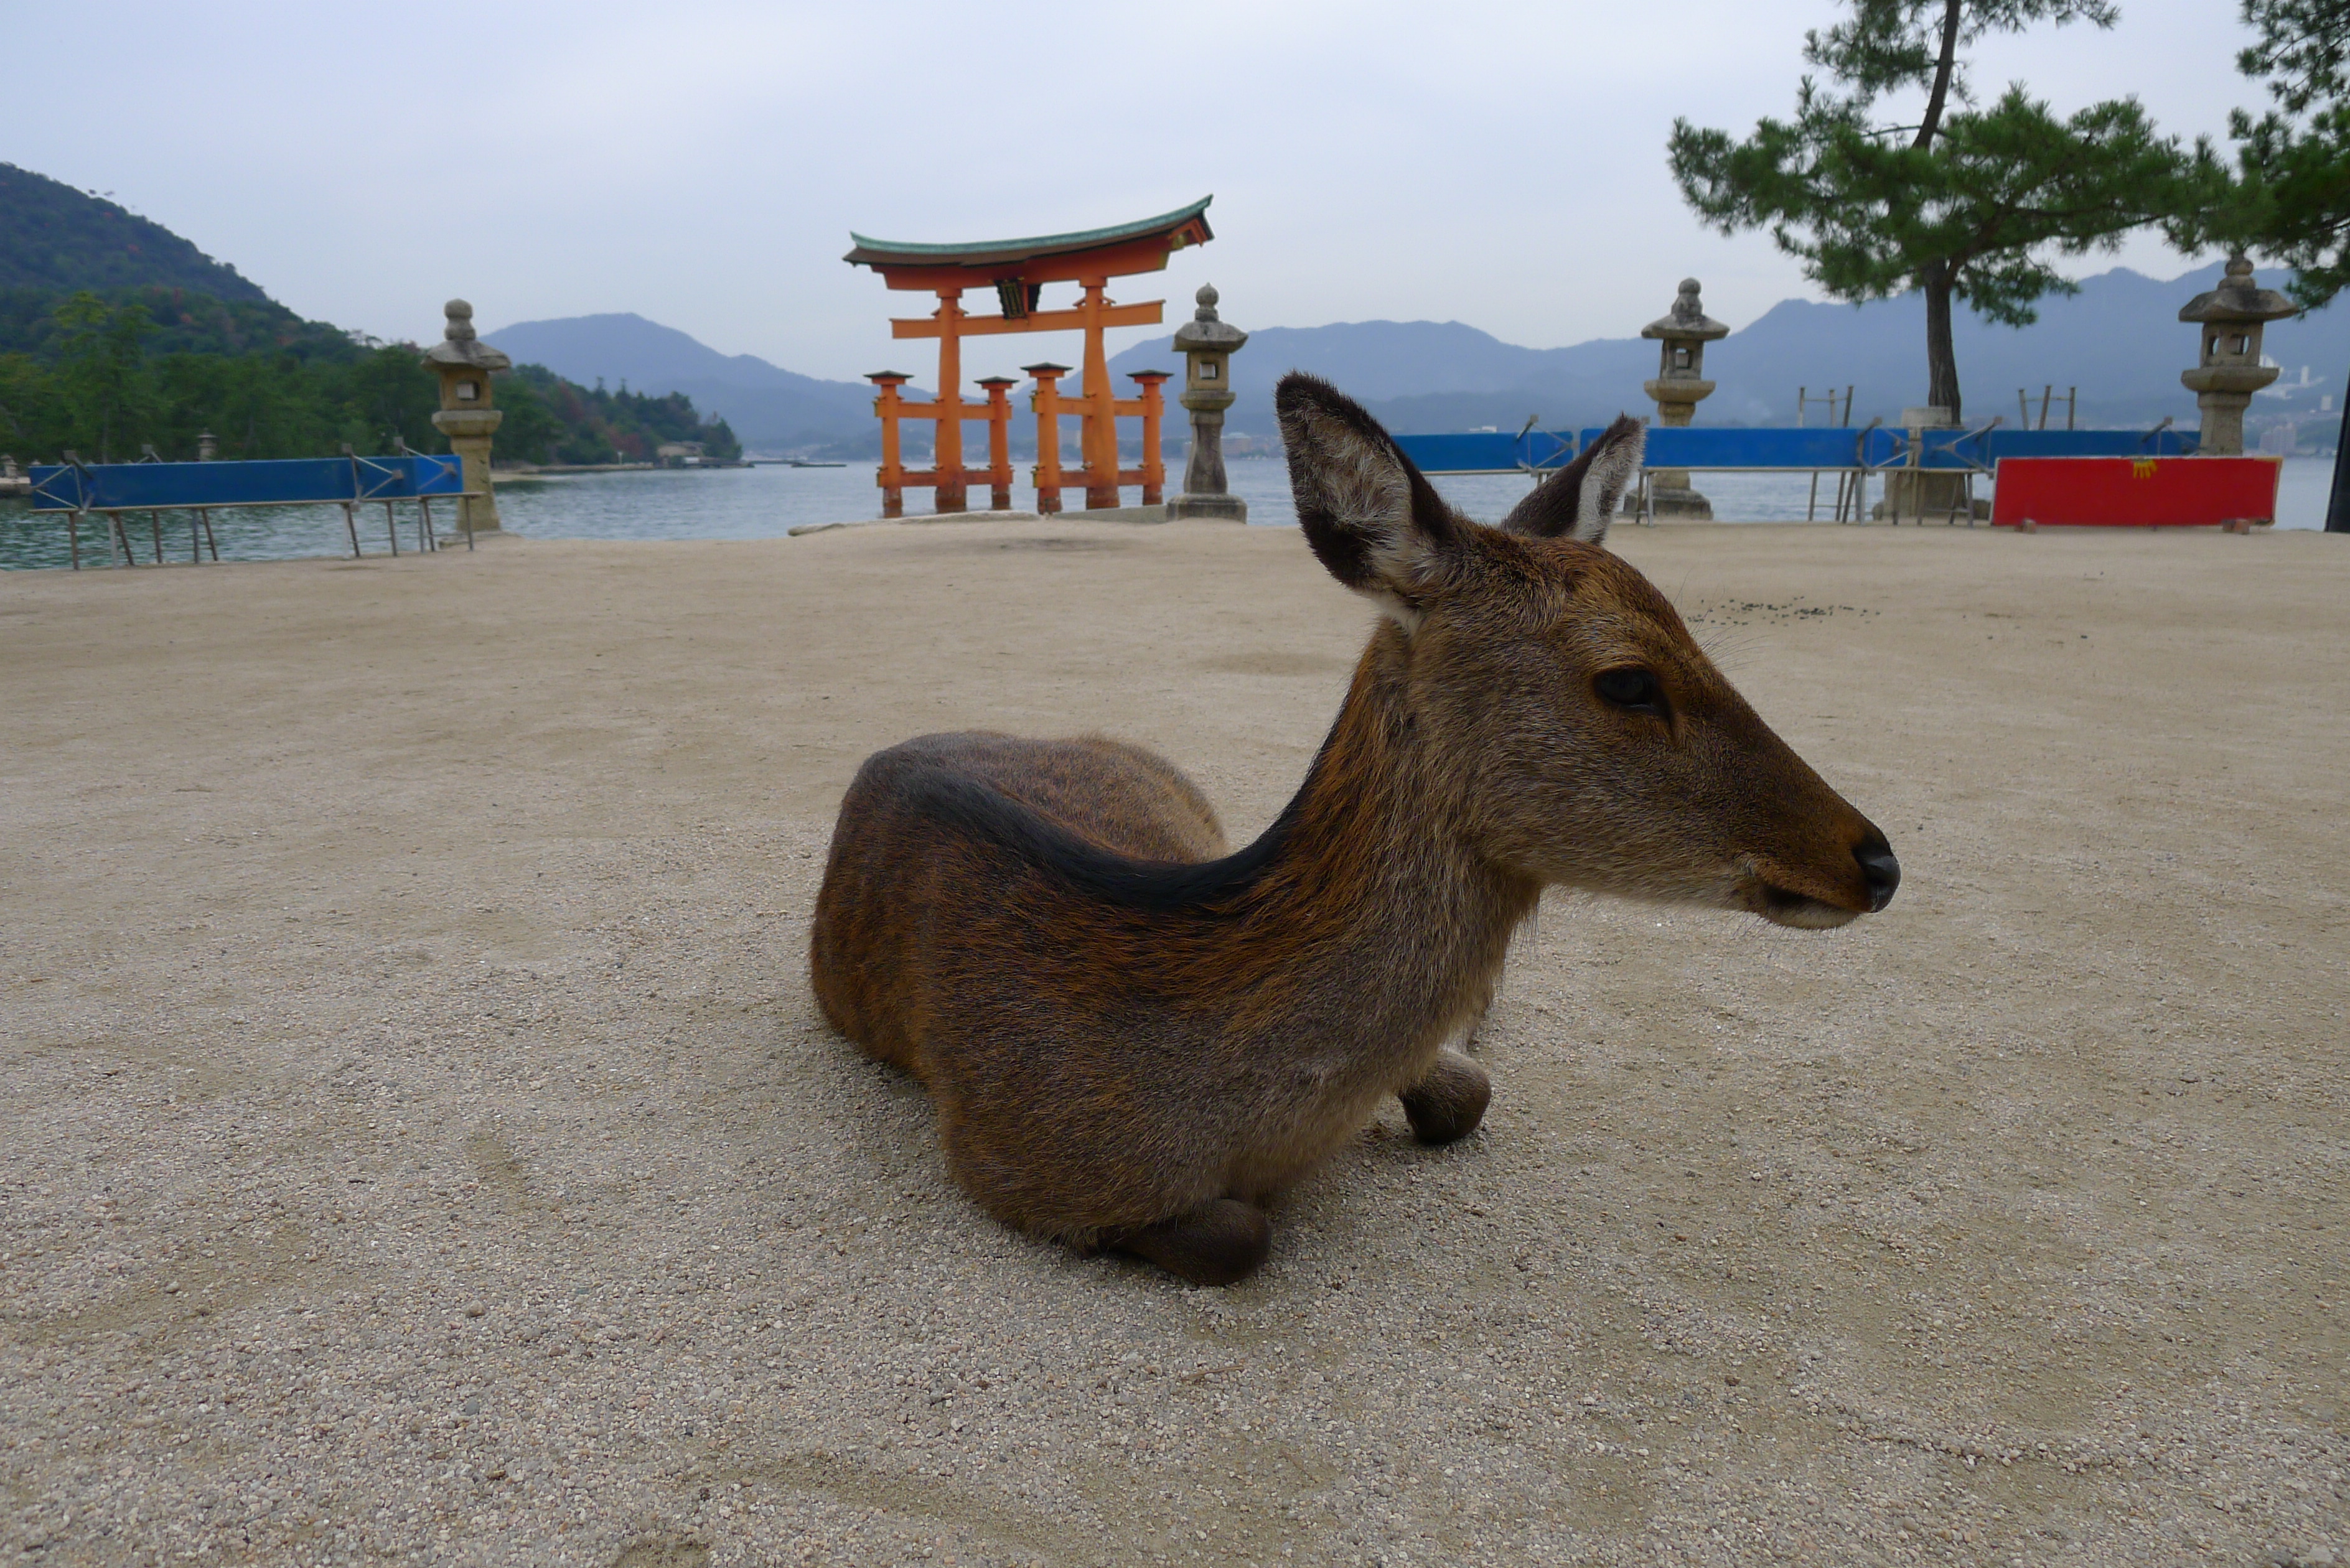 Deer at Ise Shrine near Hiroshima, Japan